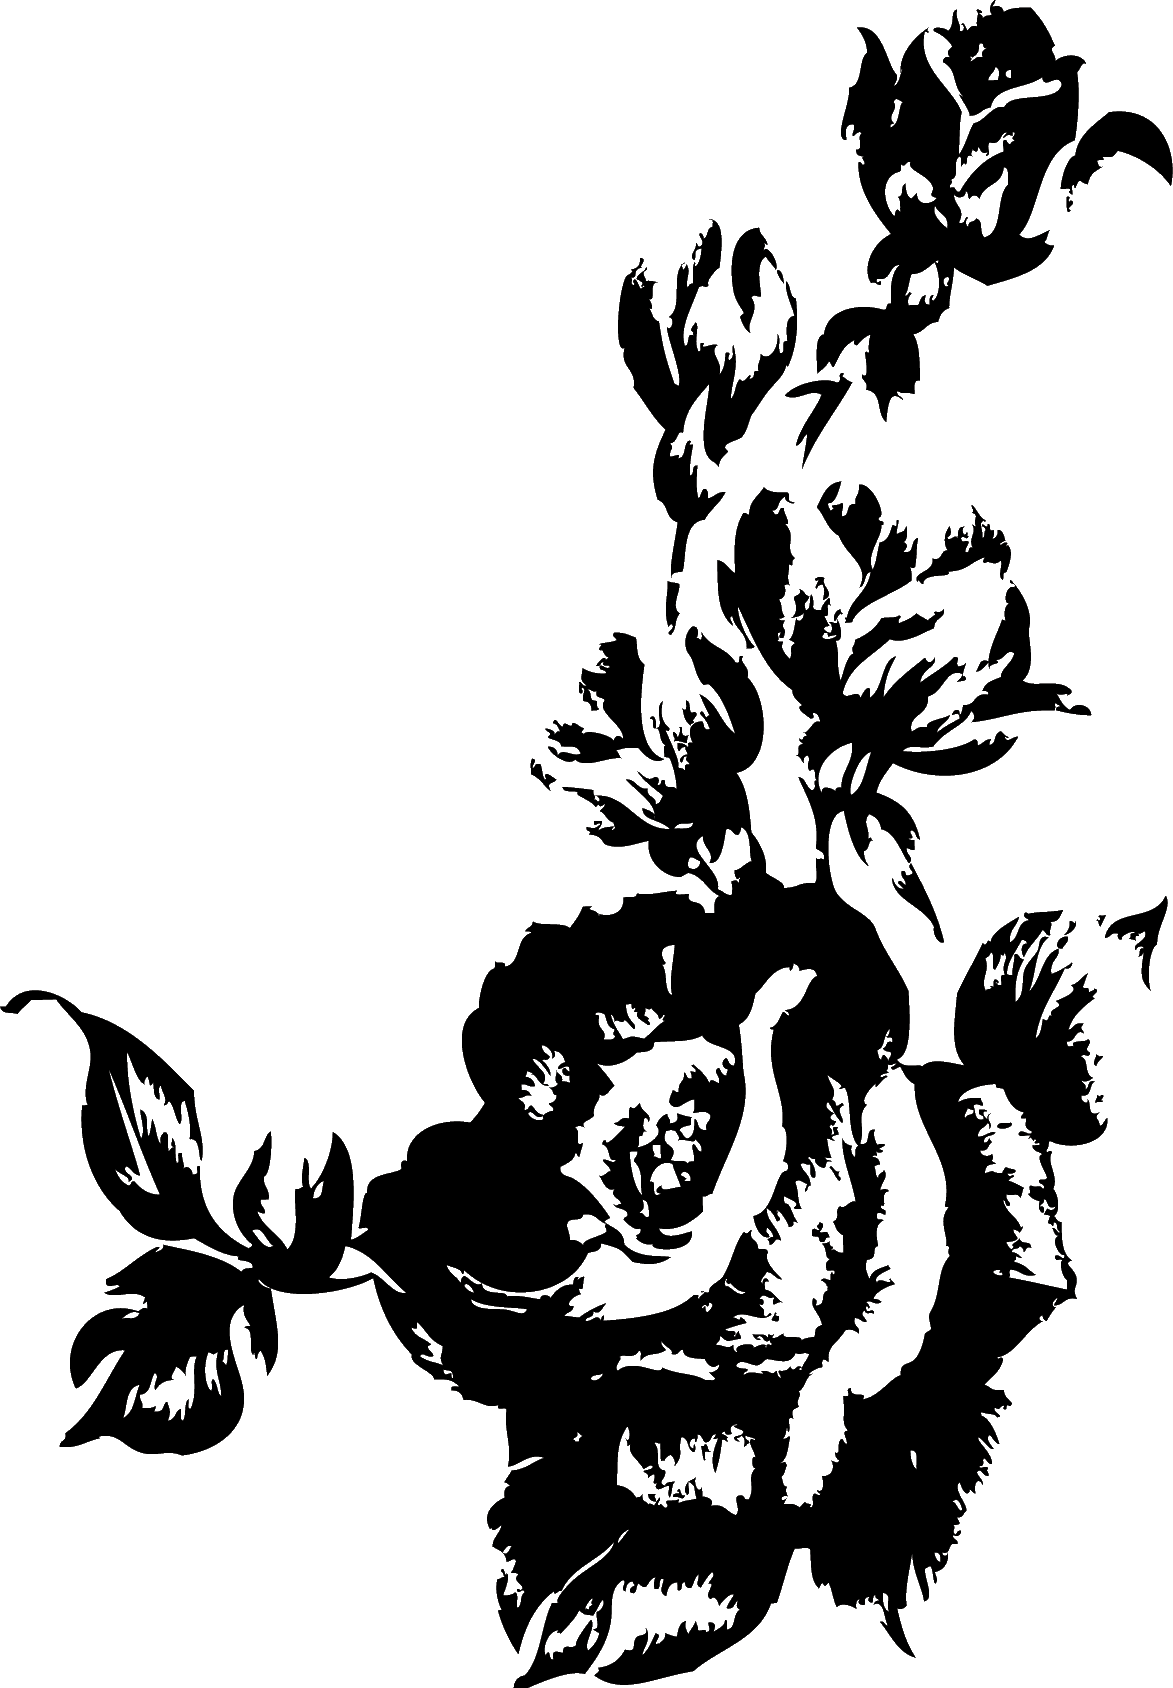 花のイラスト フリー素材 白黒 モノクロno 161 版画風のバラ